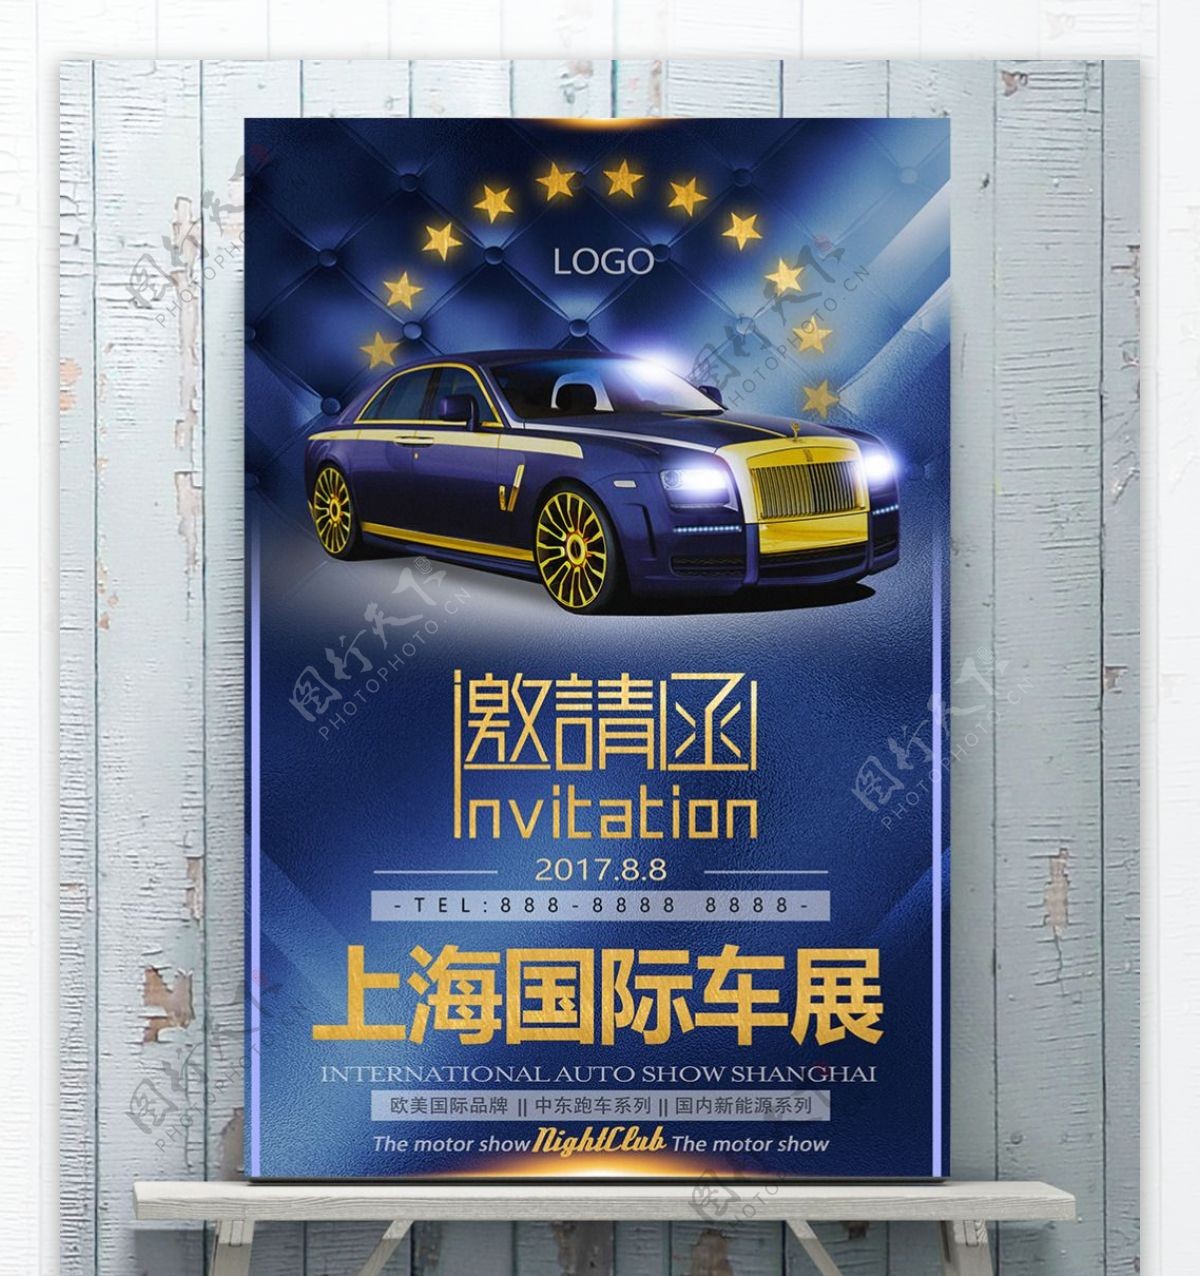 国际车展展会邀请函海报宣传单